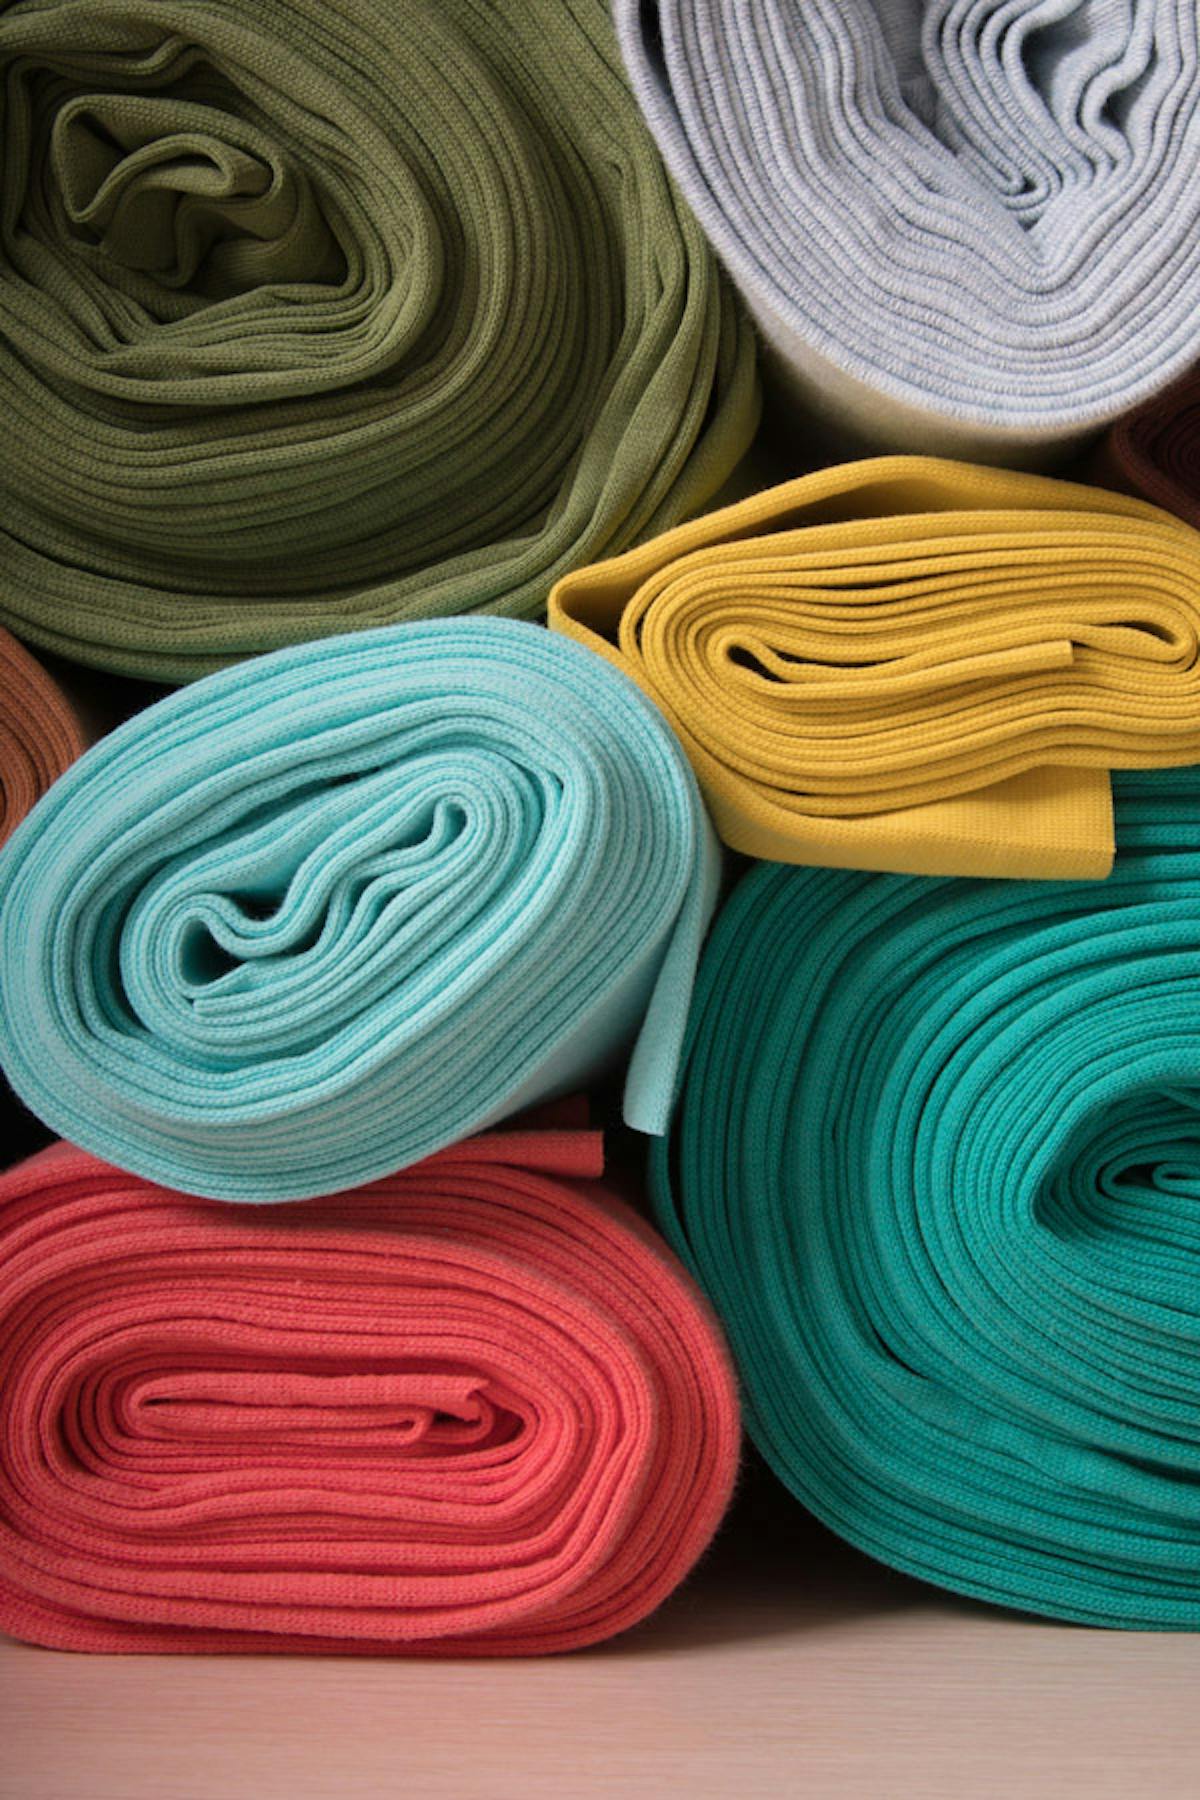  rotoli di tessuti a maglia multicolore impilati l'uno sull'altro